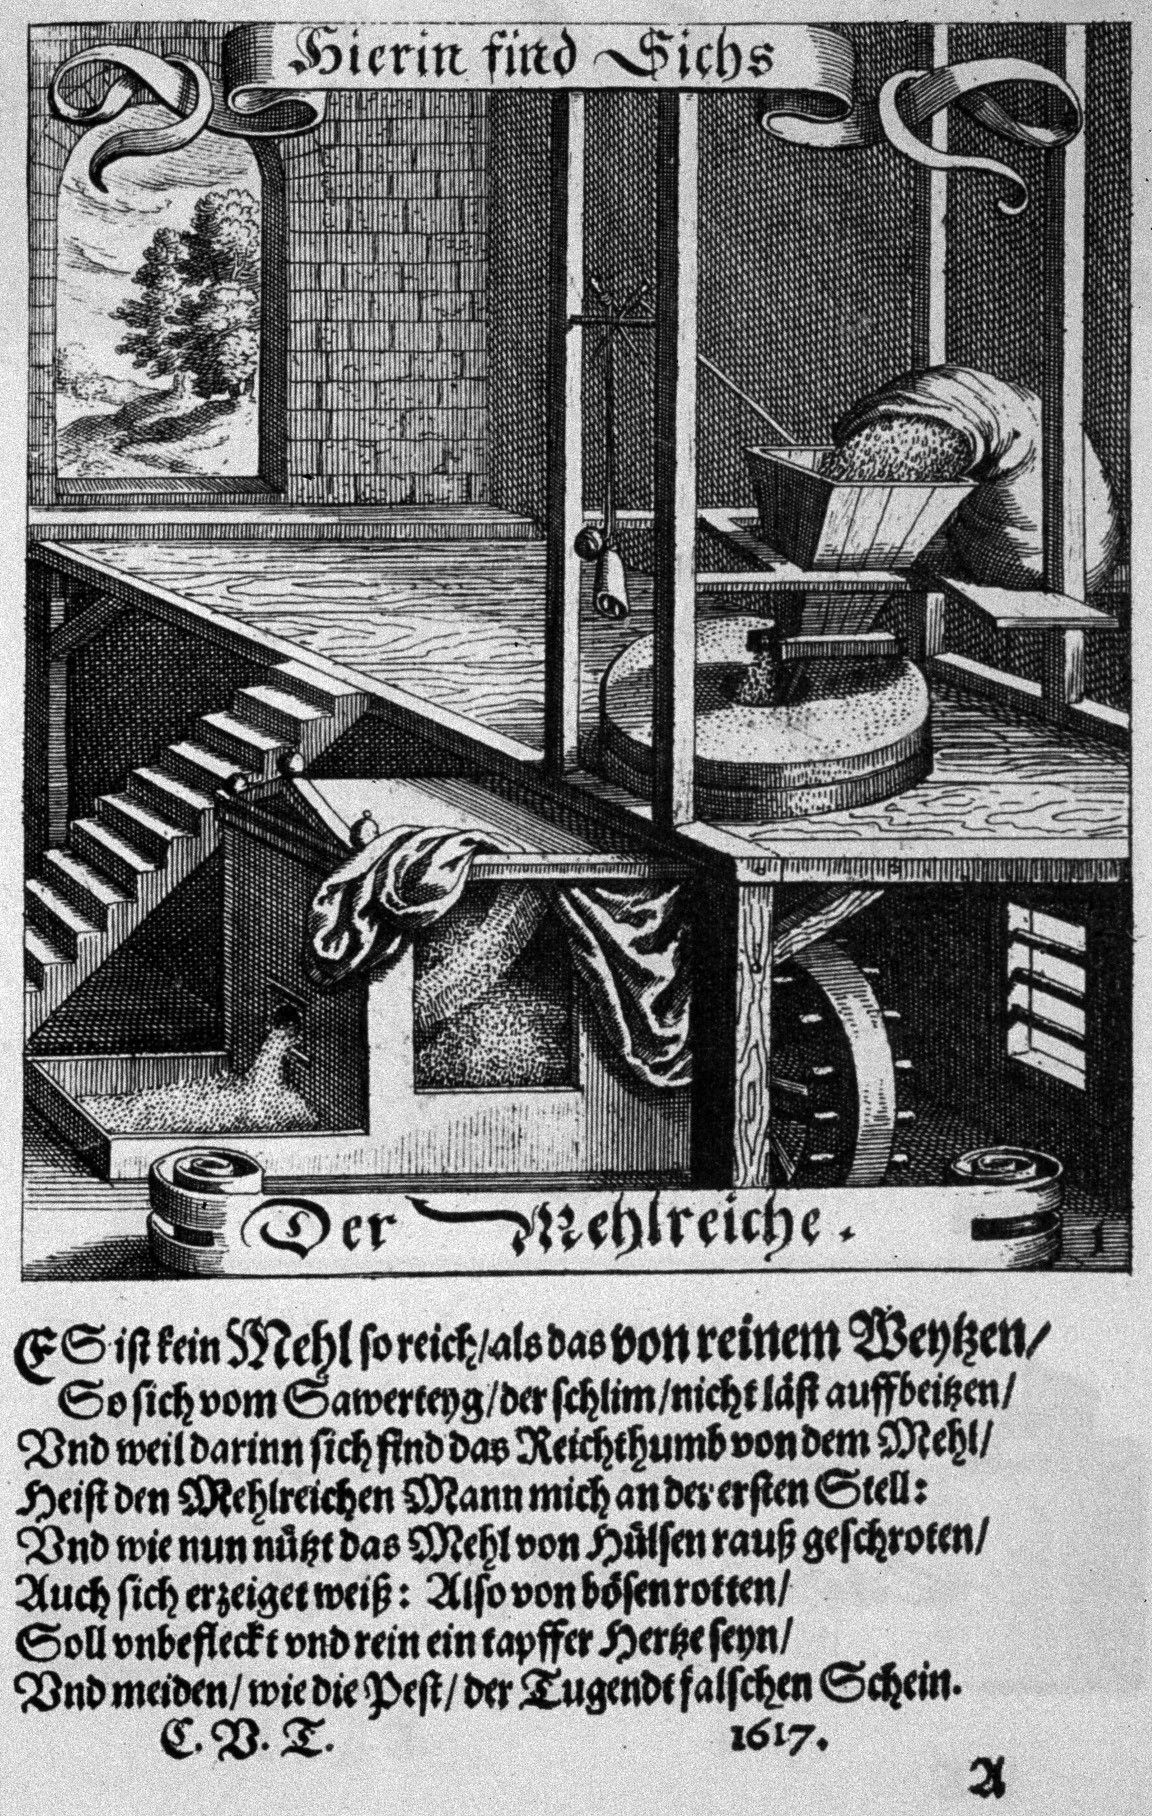 Abb. 2: Mühlenimprese Caspars von Teutleben (FG 1). Aus: A. a. o. (wie Abb. 1)